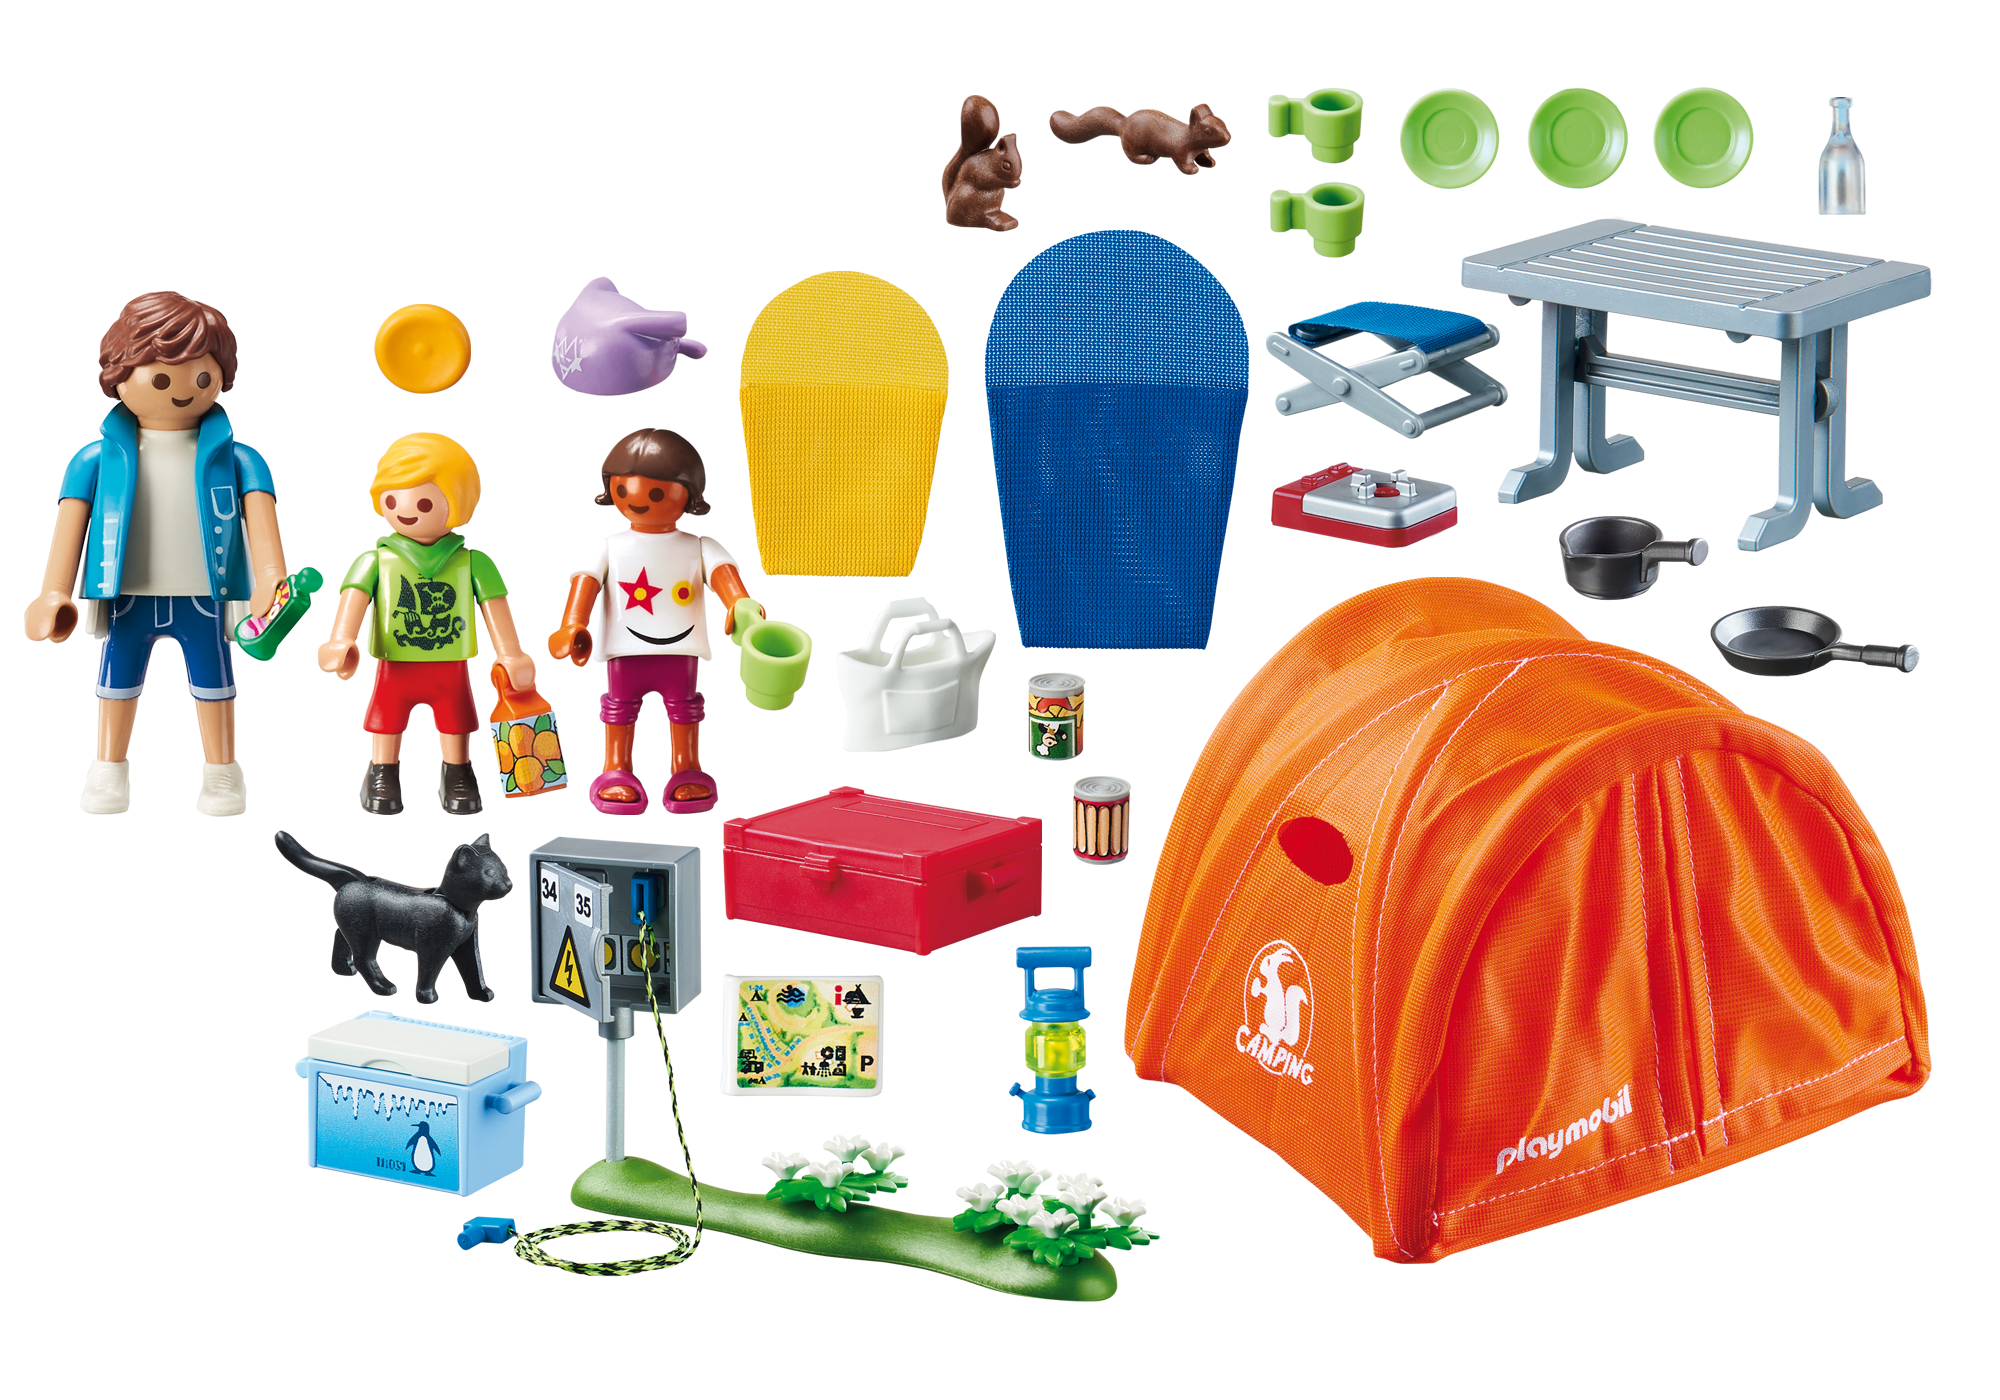 playmobil family fun camper